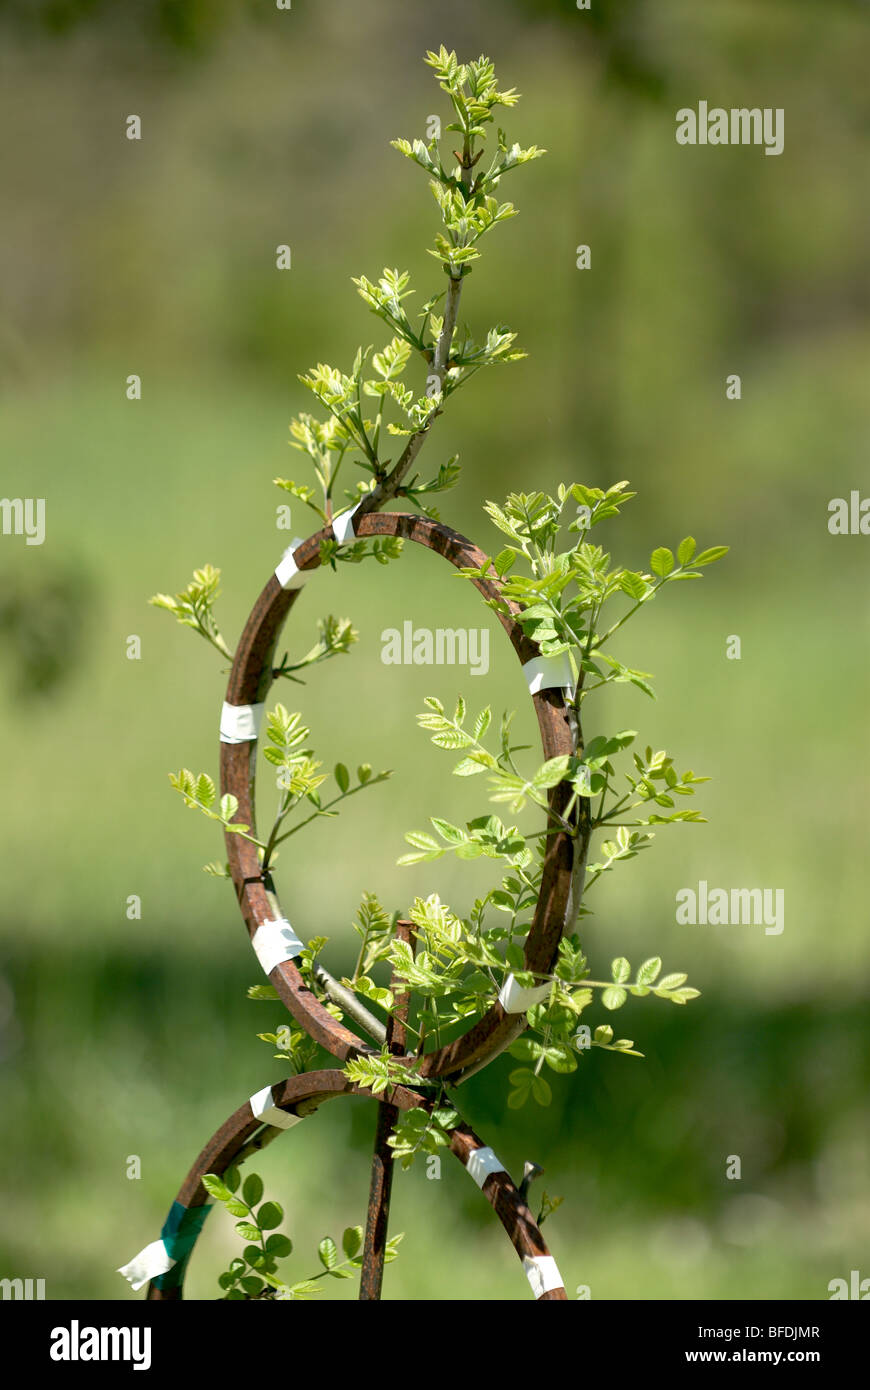 Retoño de árbol formado alrededor de metal para crear forma inusual Foto de stock